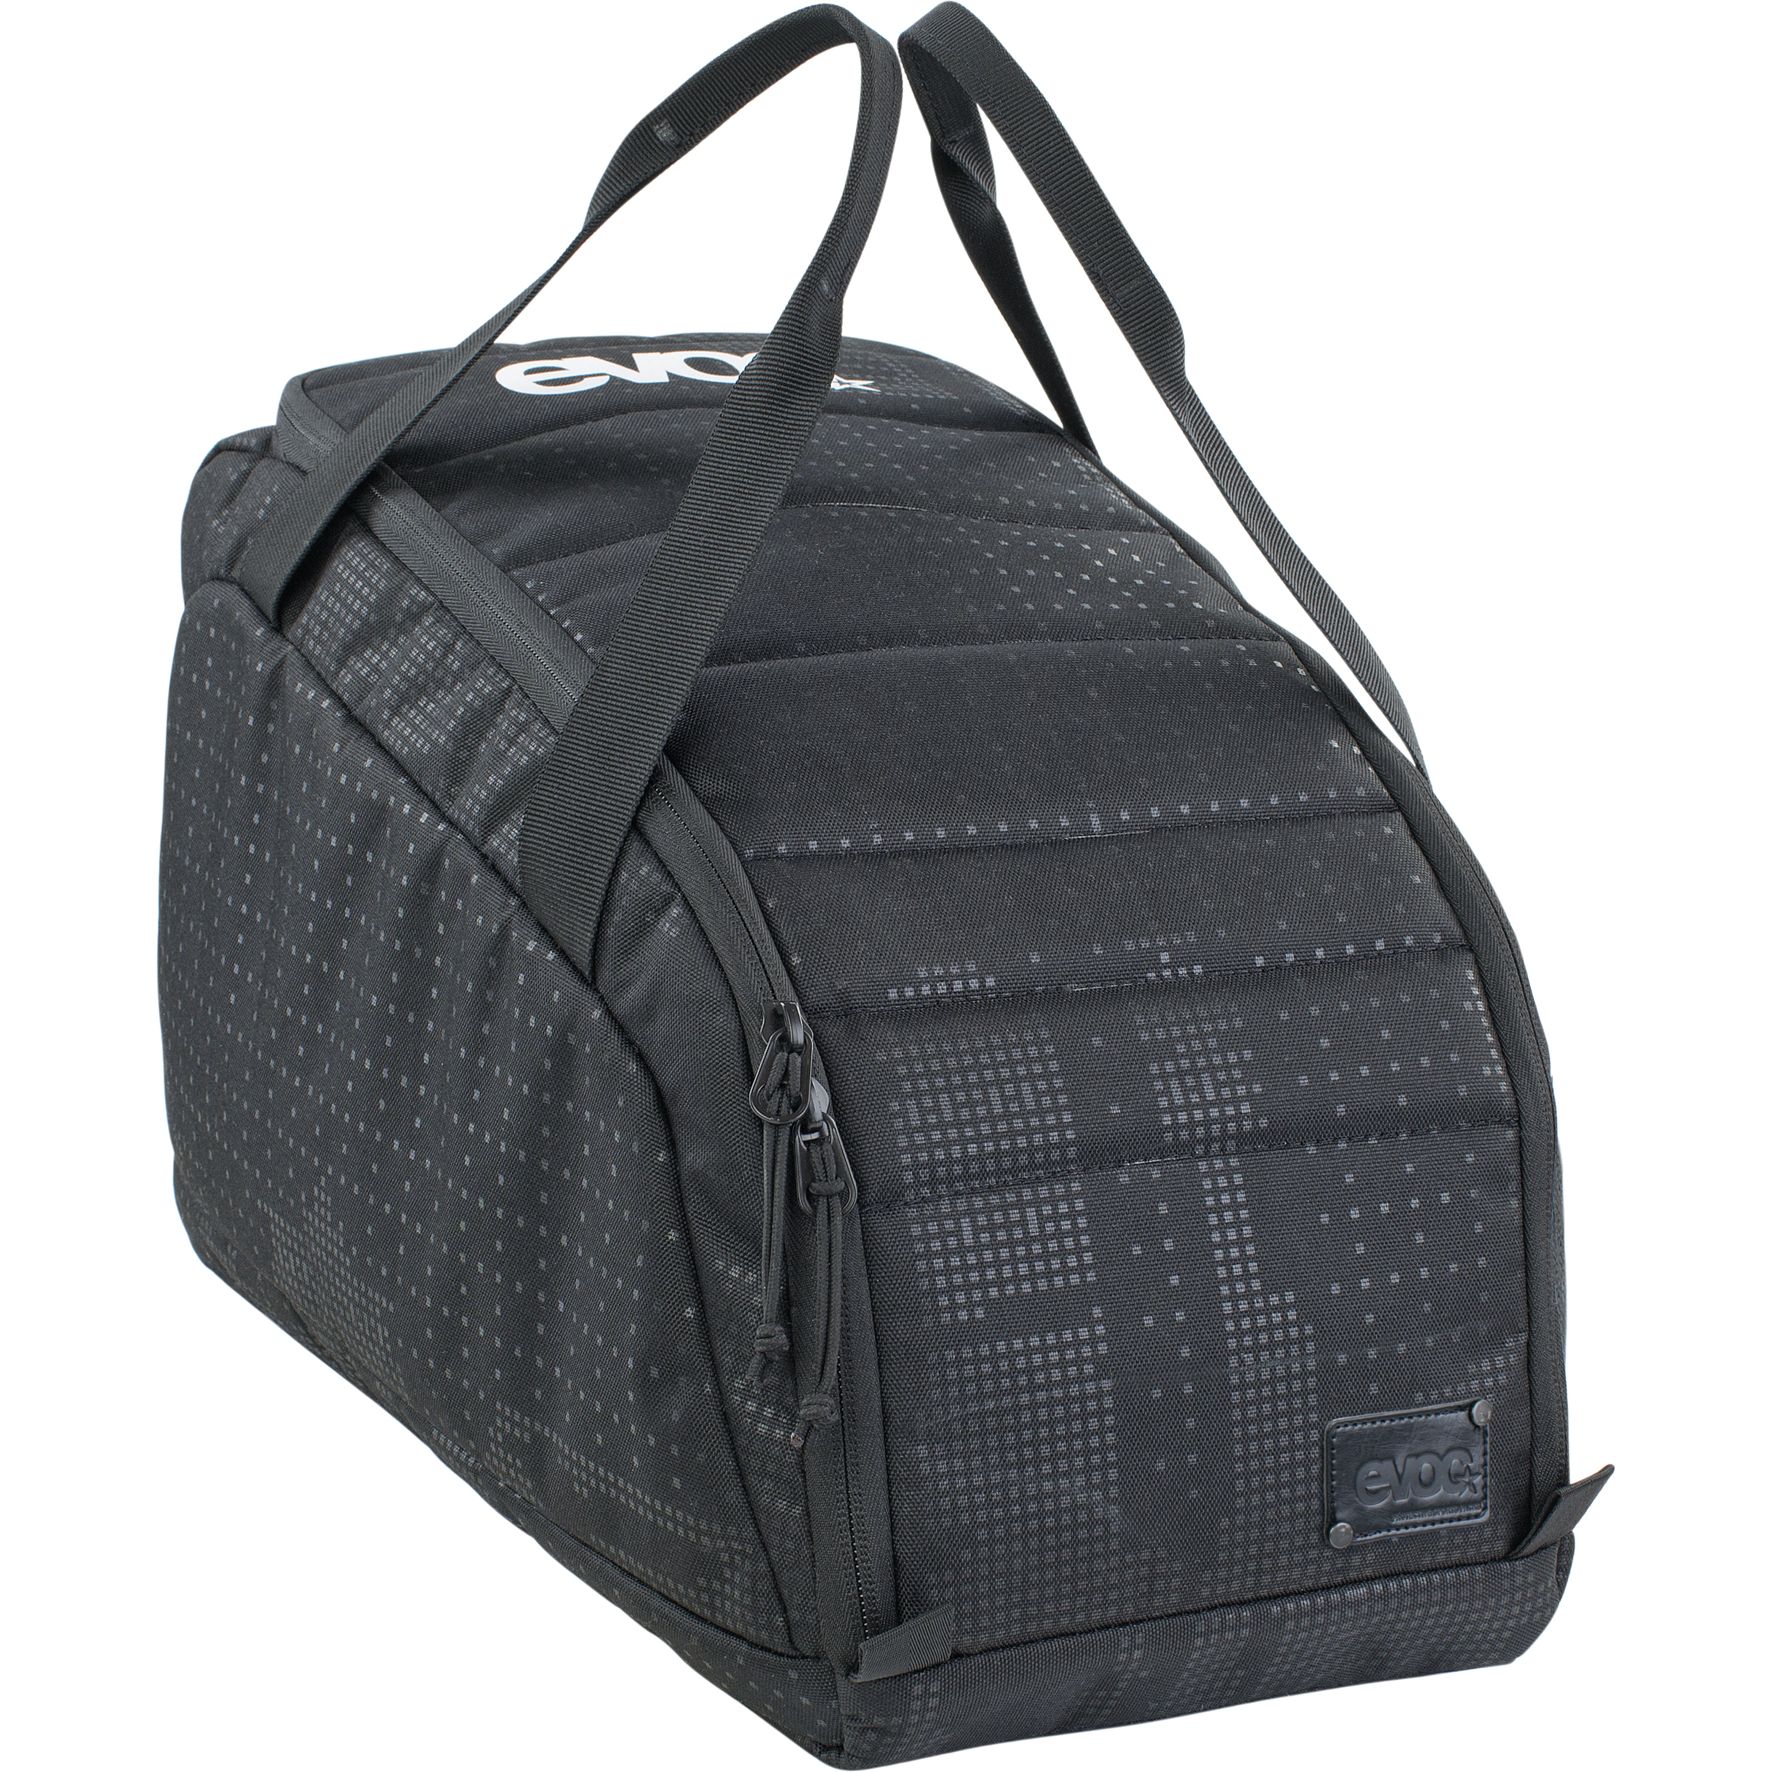 Produktbild von EVOC Gear Bag 20L Sporttasche - Schwarz